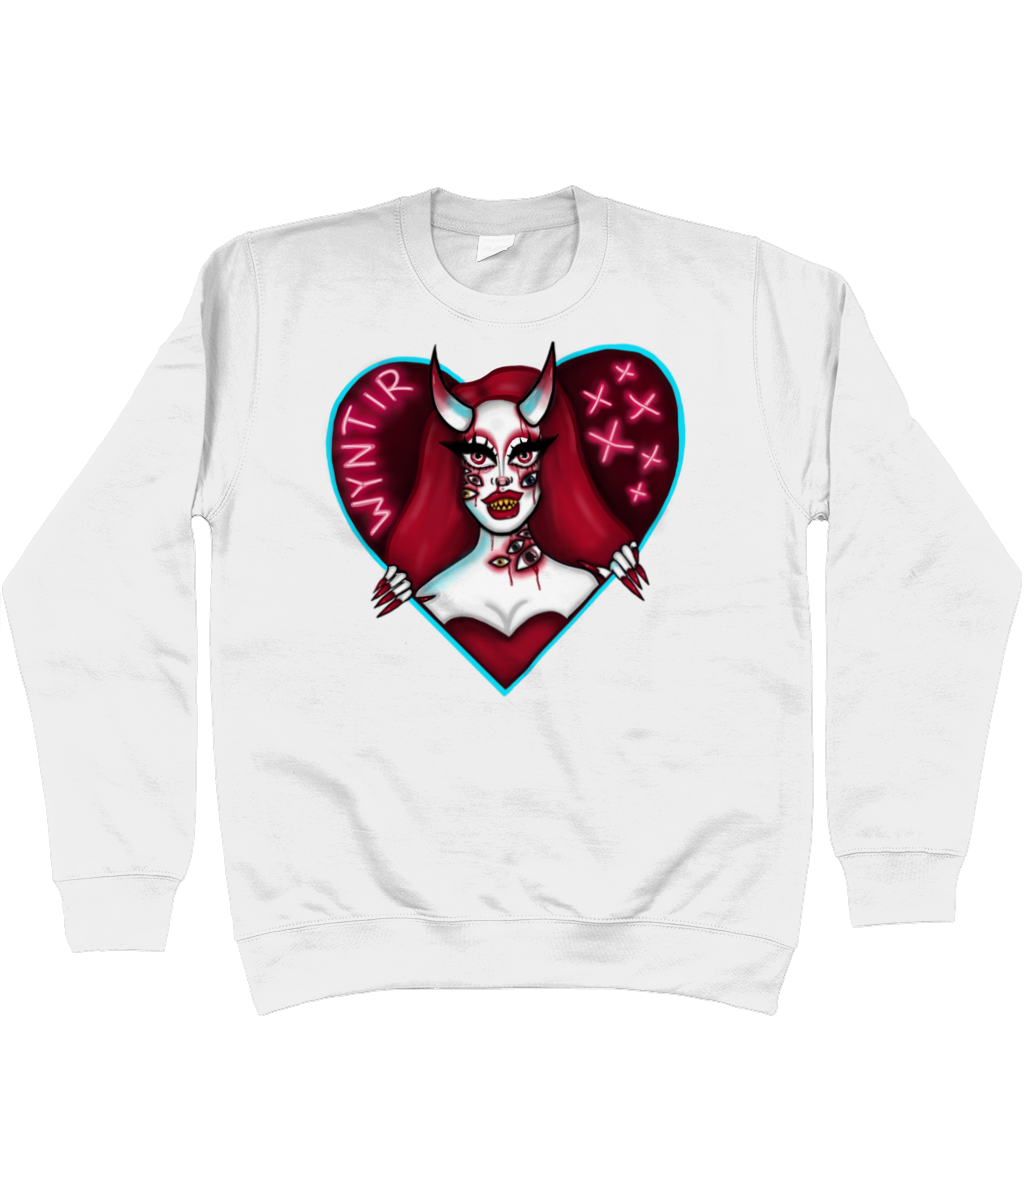 Wyntir Rose - Neon Demon Sweatshirt